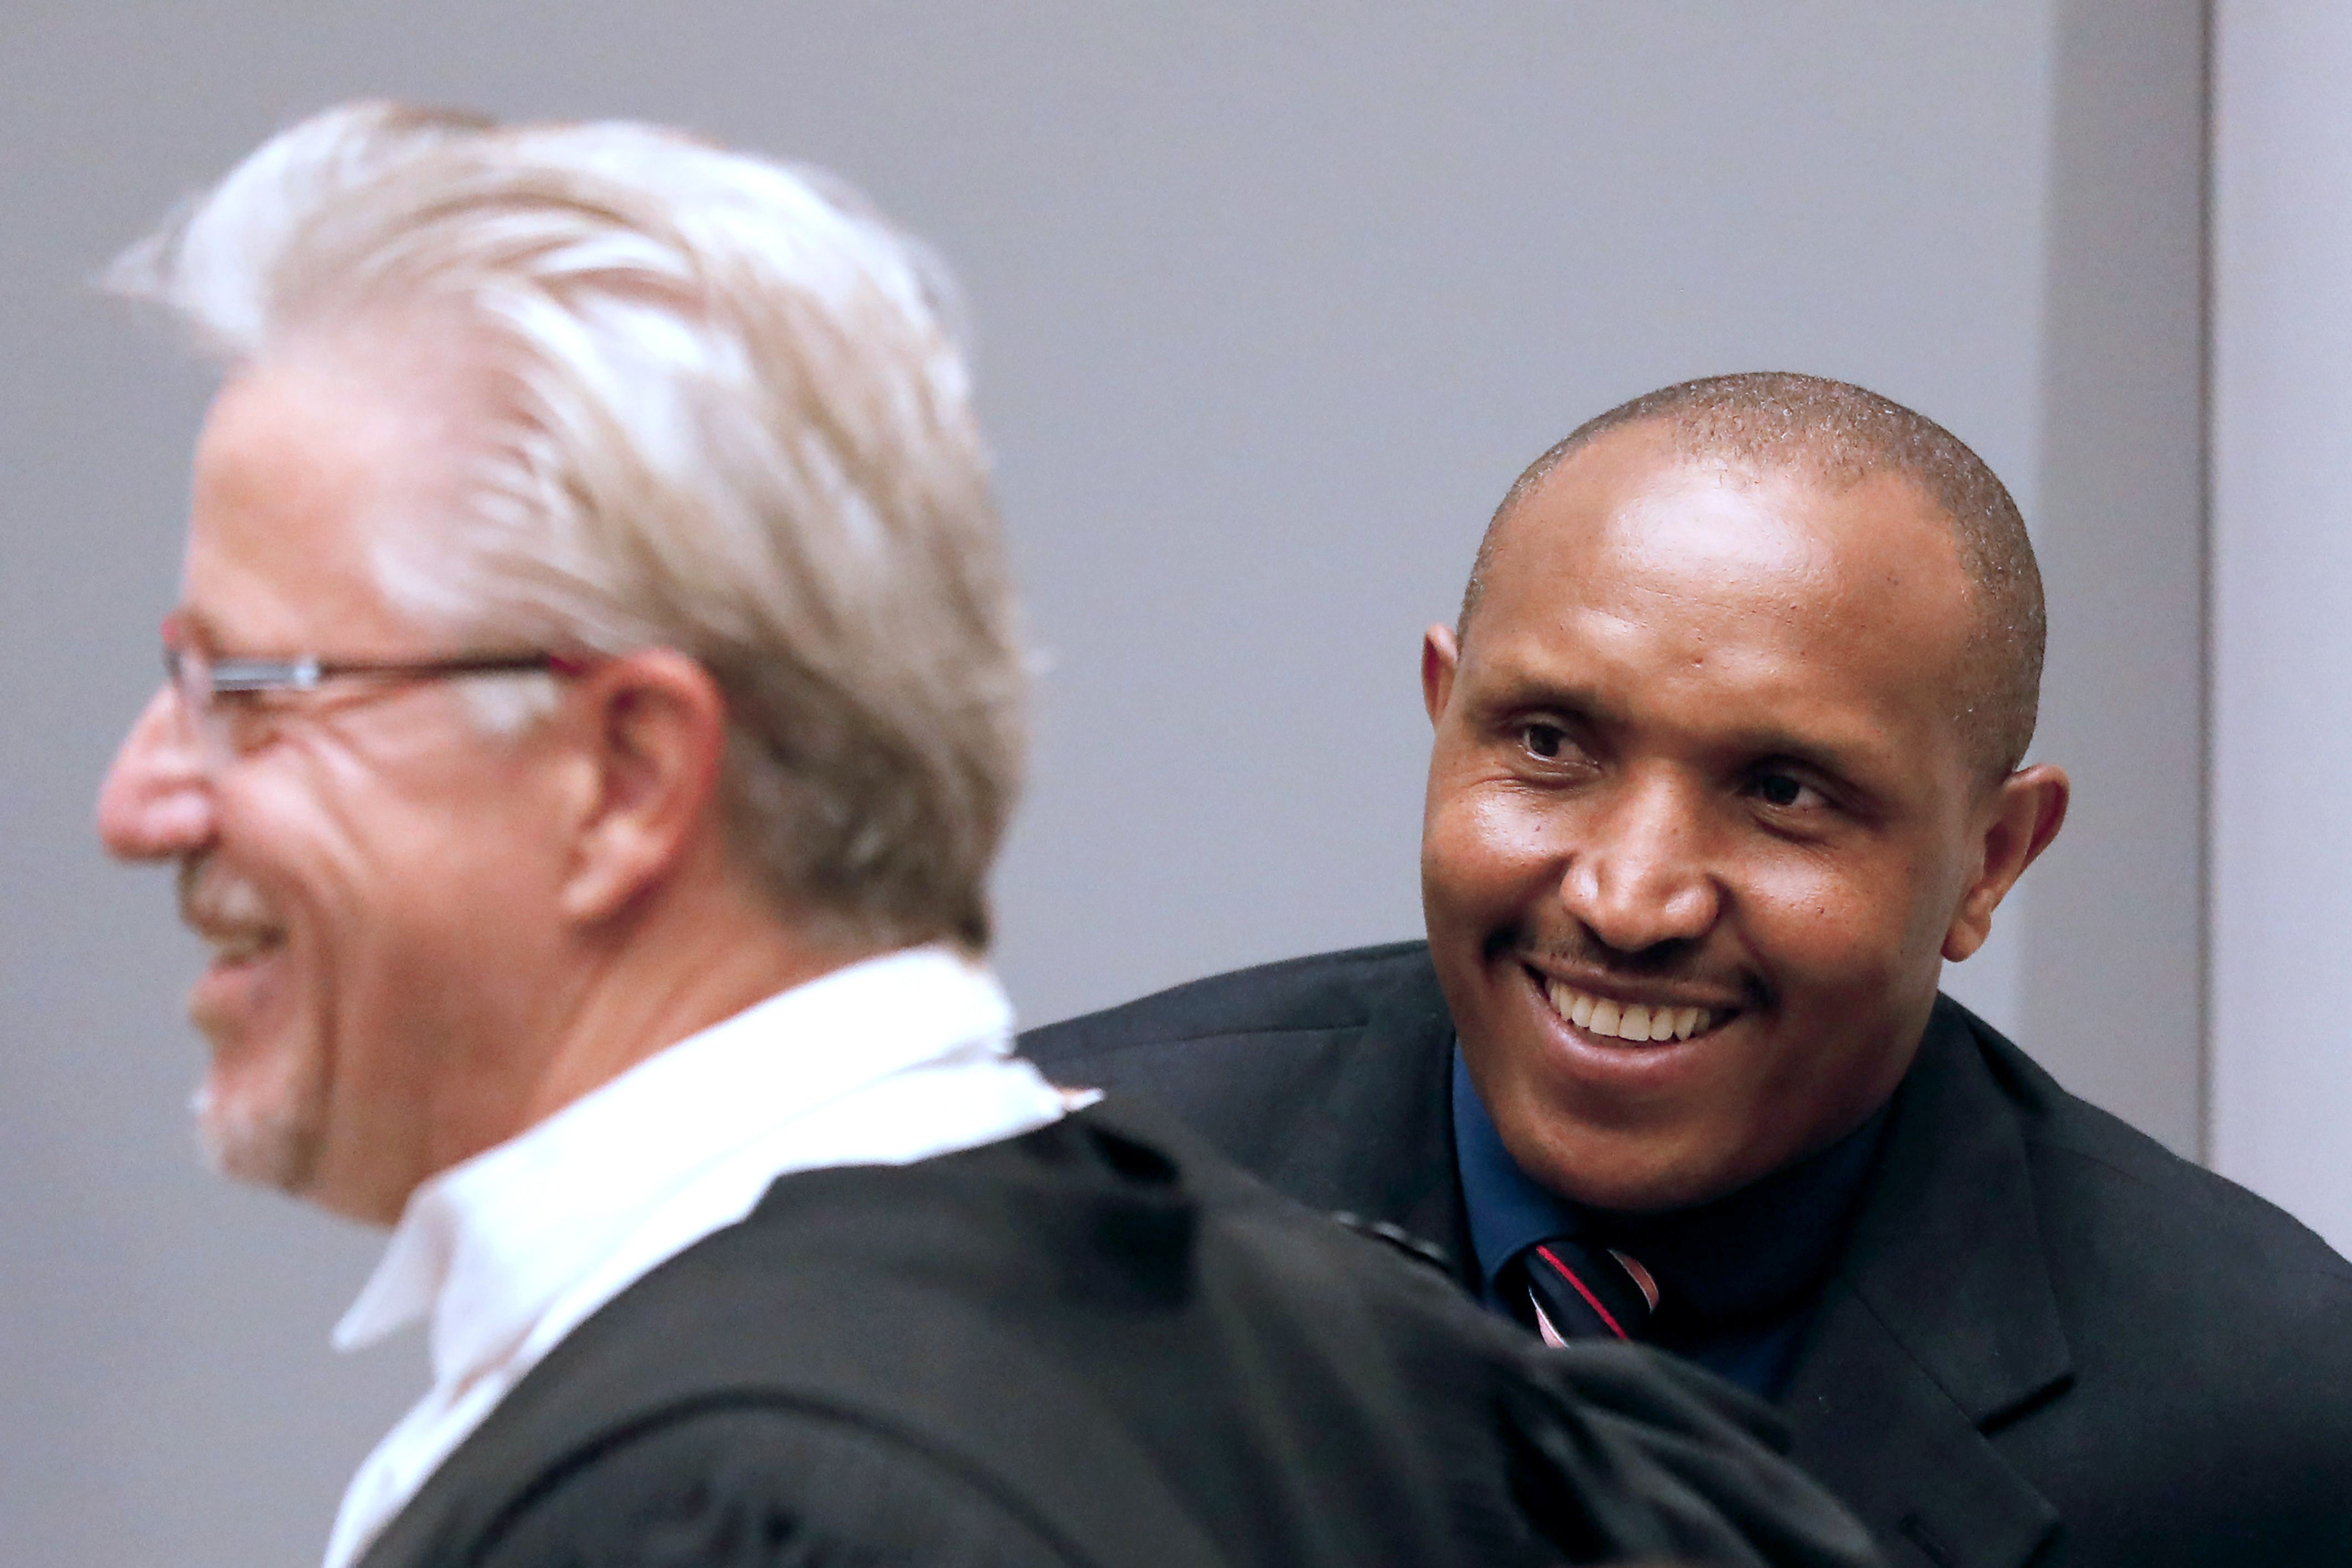 المتهم مبتسما أثناء جلسة محاكمته بحضور محاميه